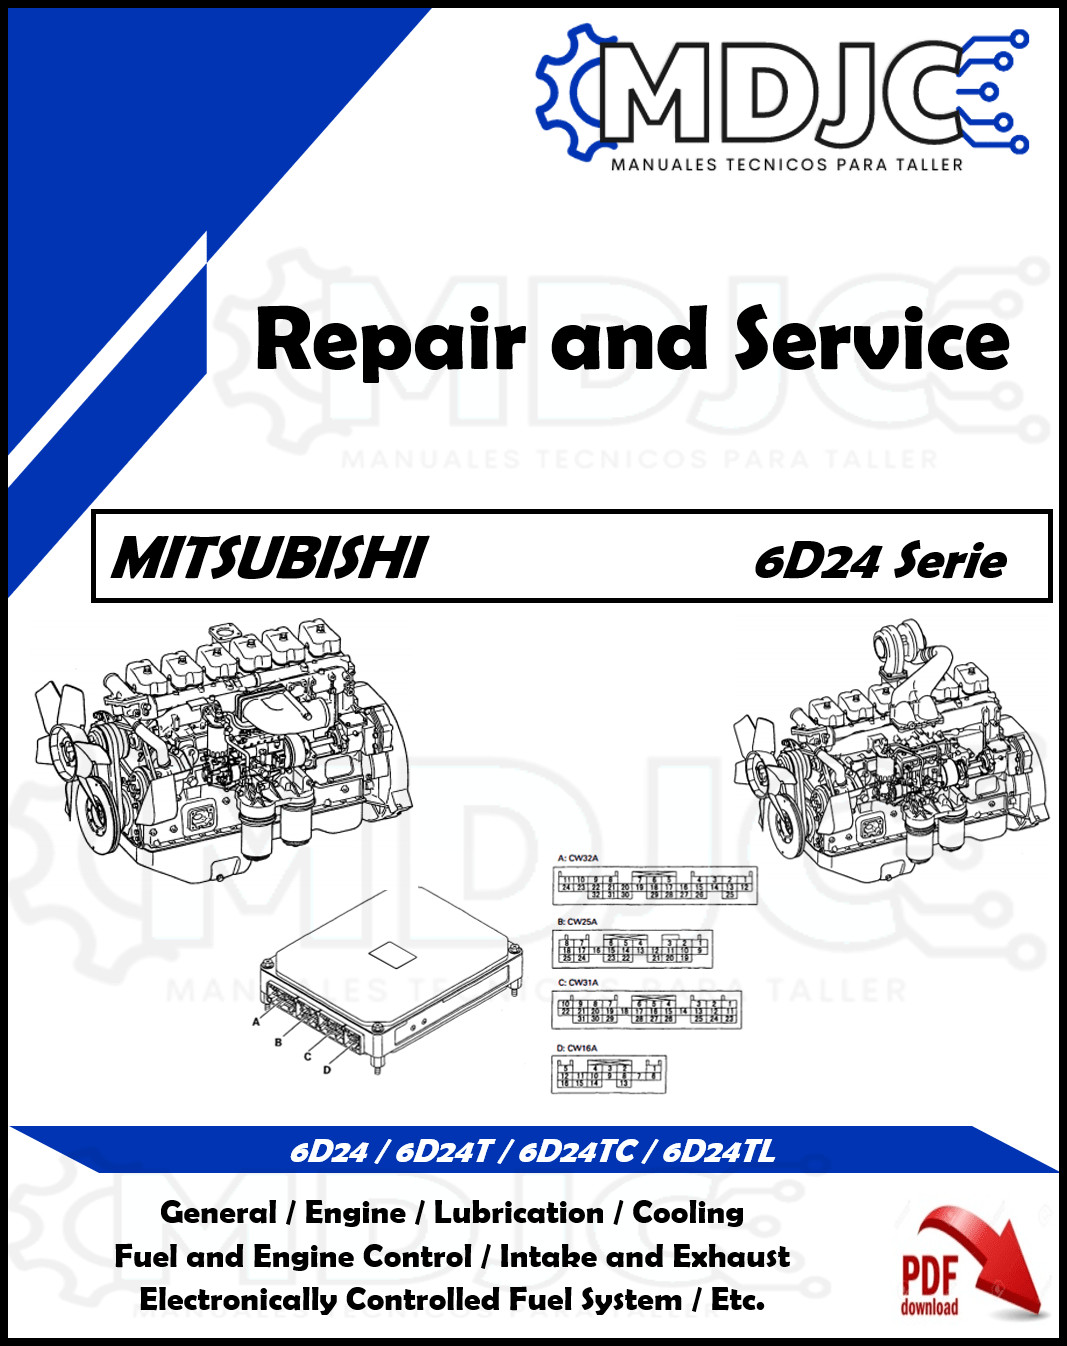 Manual de Taller (Reparación y Servicio) Mitsubishi 6D24 / 6D24T / 6D24TC / 6D24TL